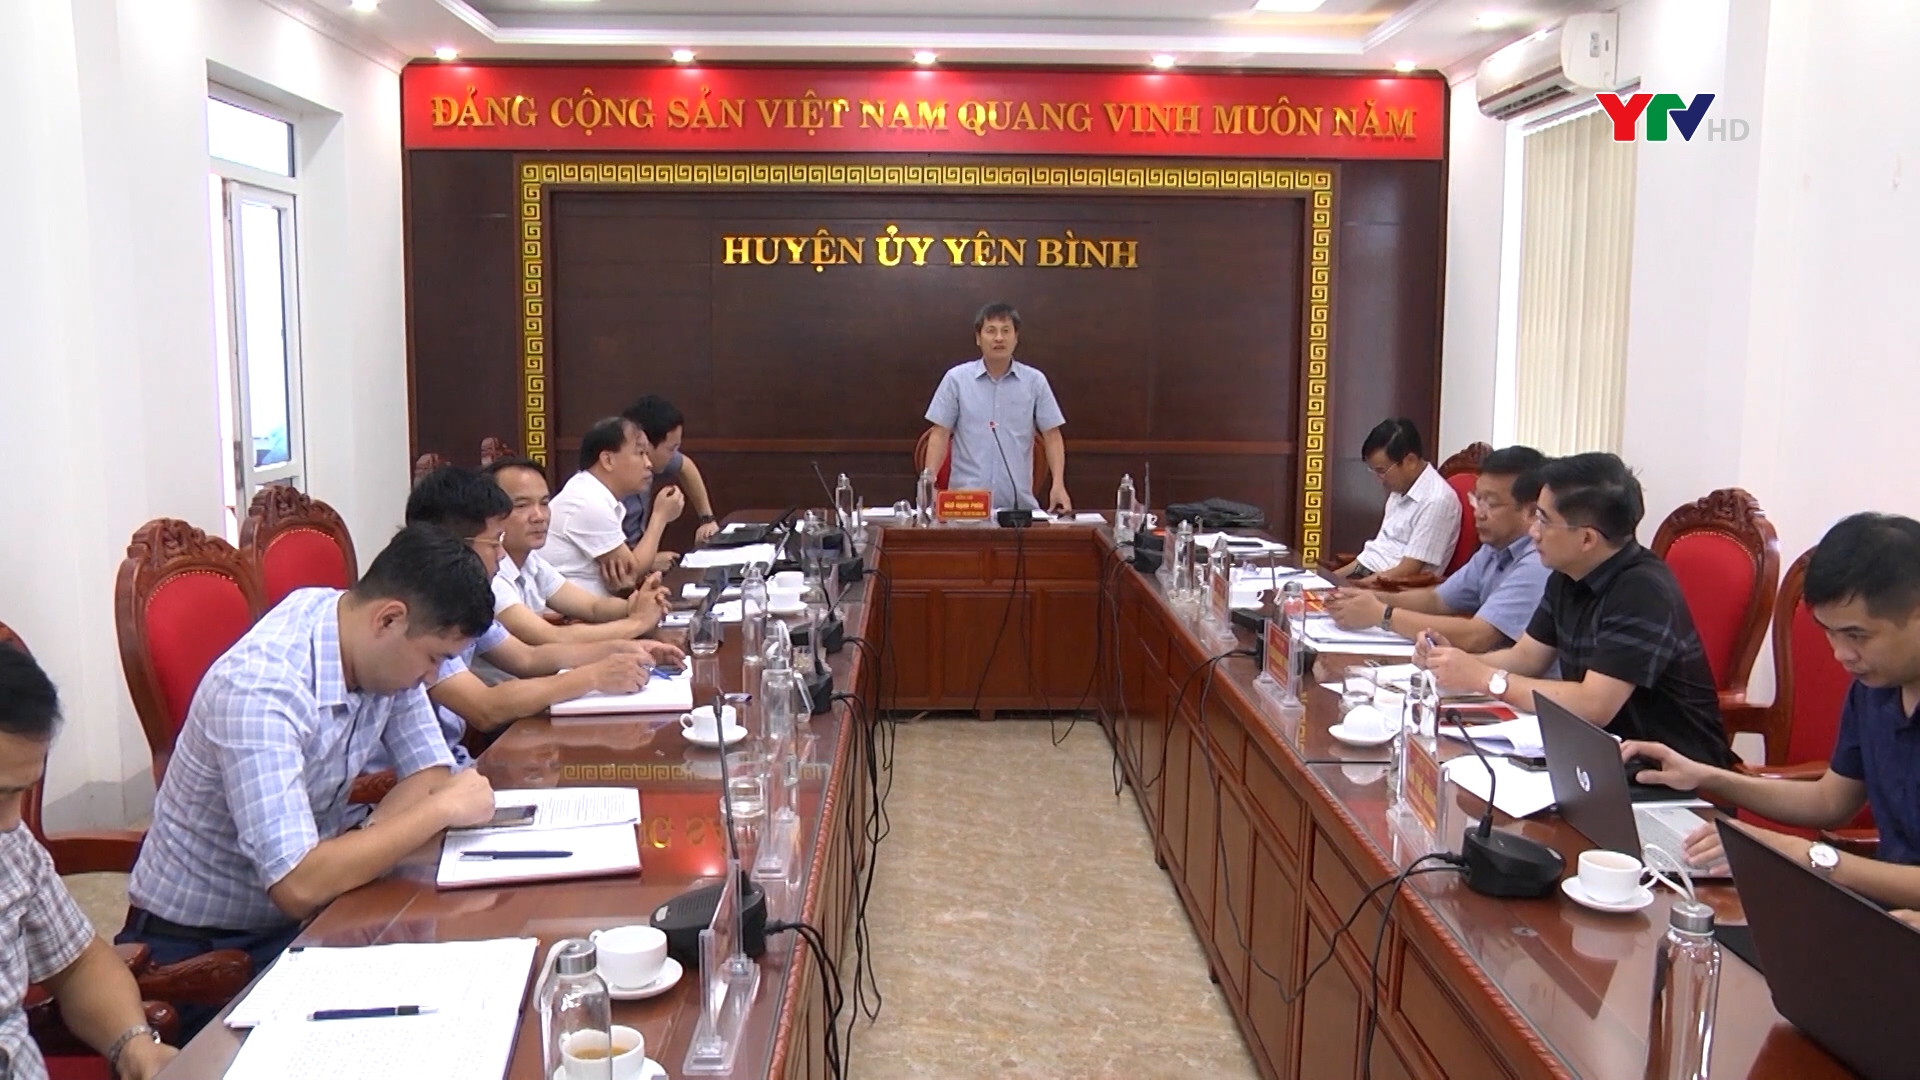 Đồng chí Phó chủ tịch UBND tỉnh Ngô Hạnh Phúc kiểm tra, tháo gỡ khó khăn về thu ngân sách tại huyện Yên Bình